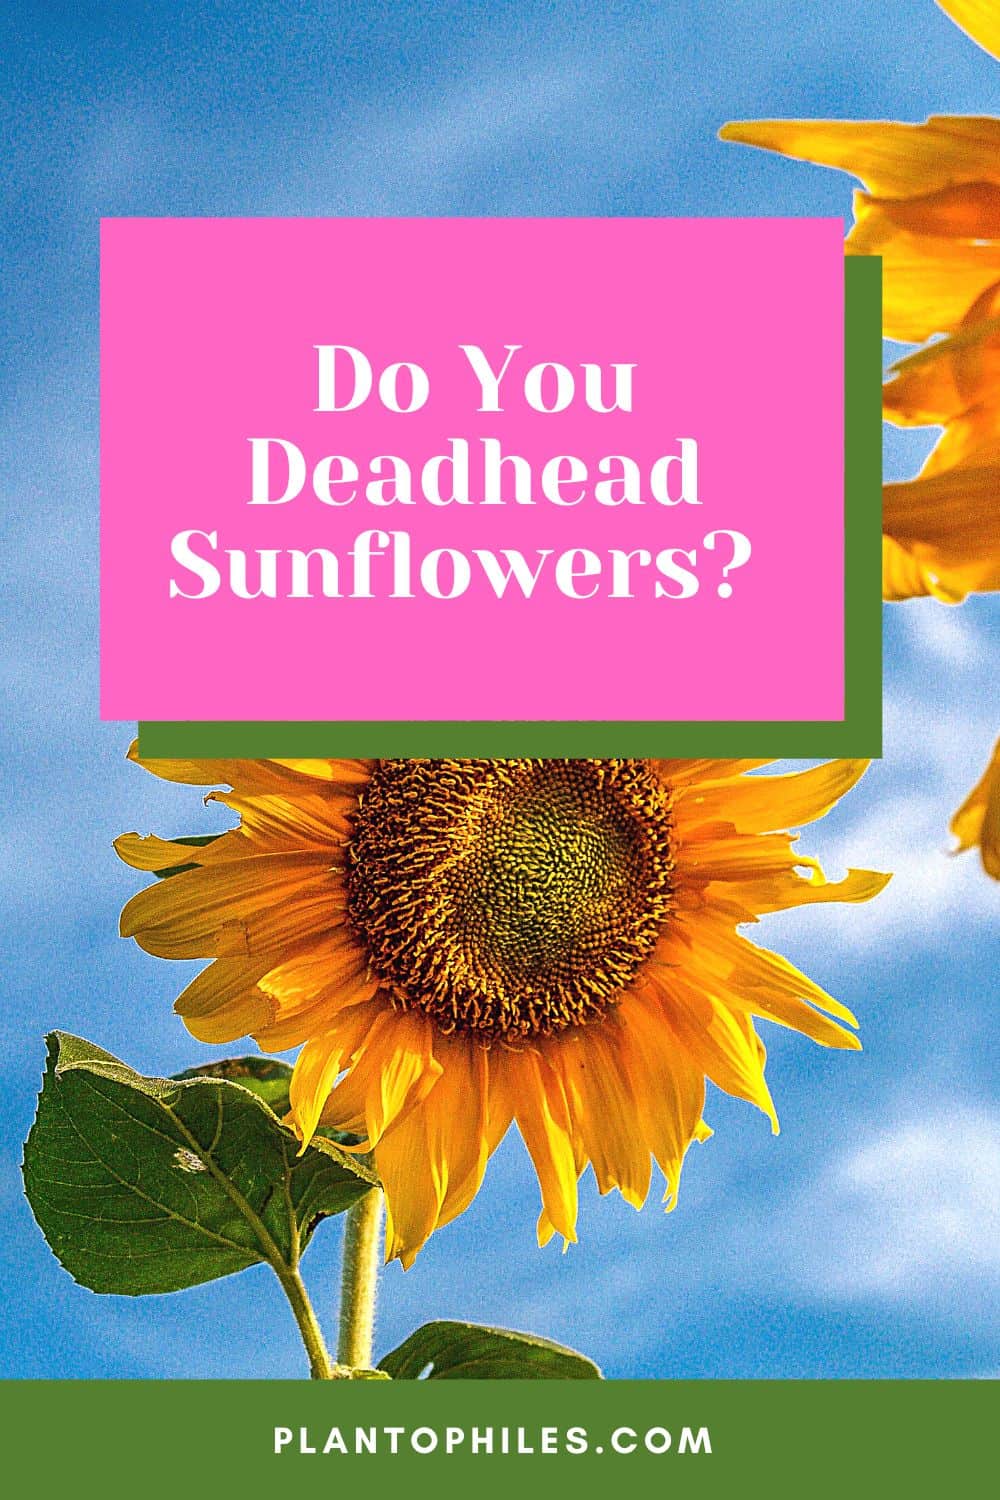 Do You Deadhead Sunflowers?